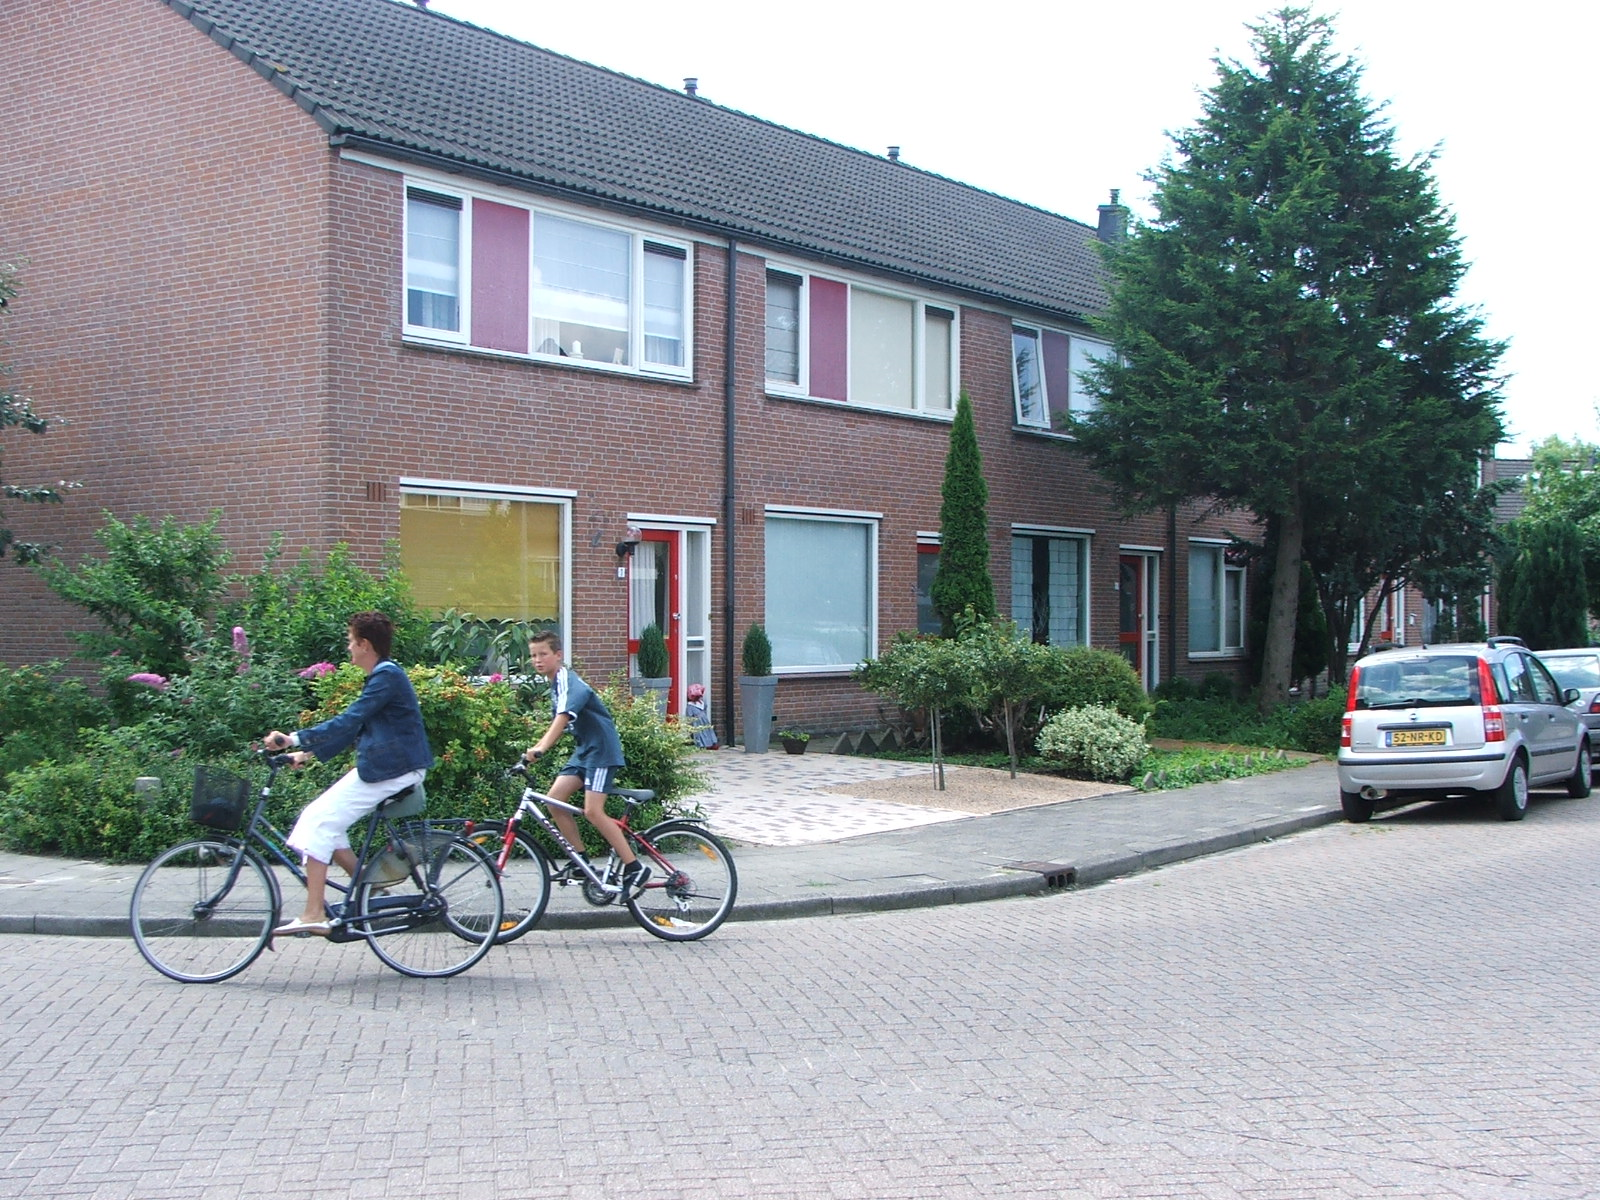 Elzenstraat 1, 2461 DN Ter Aar, Nederland